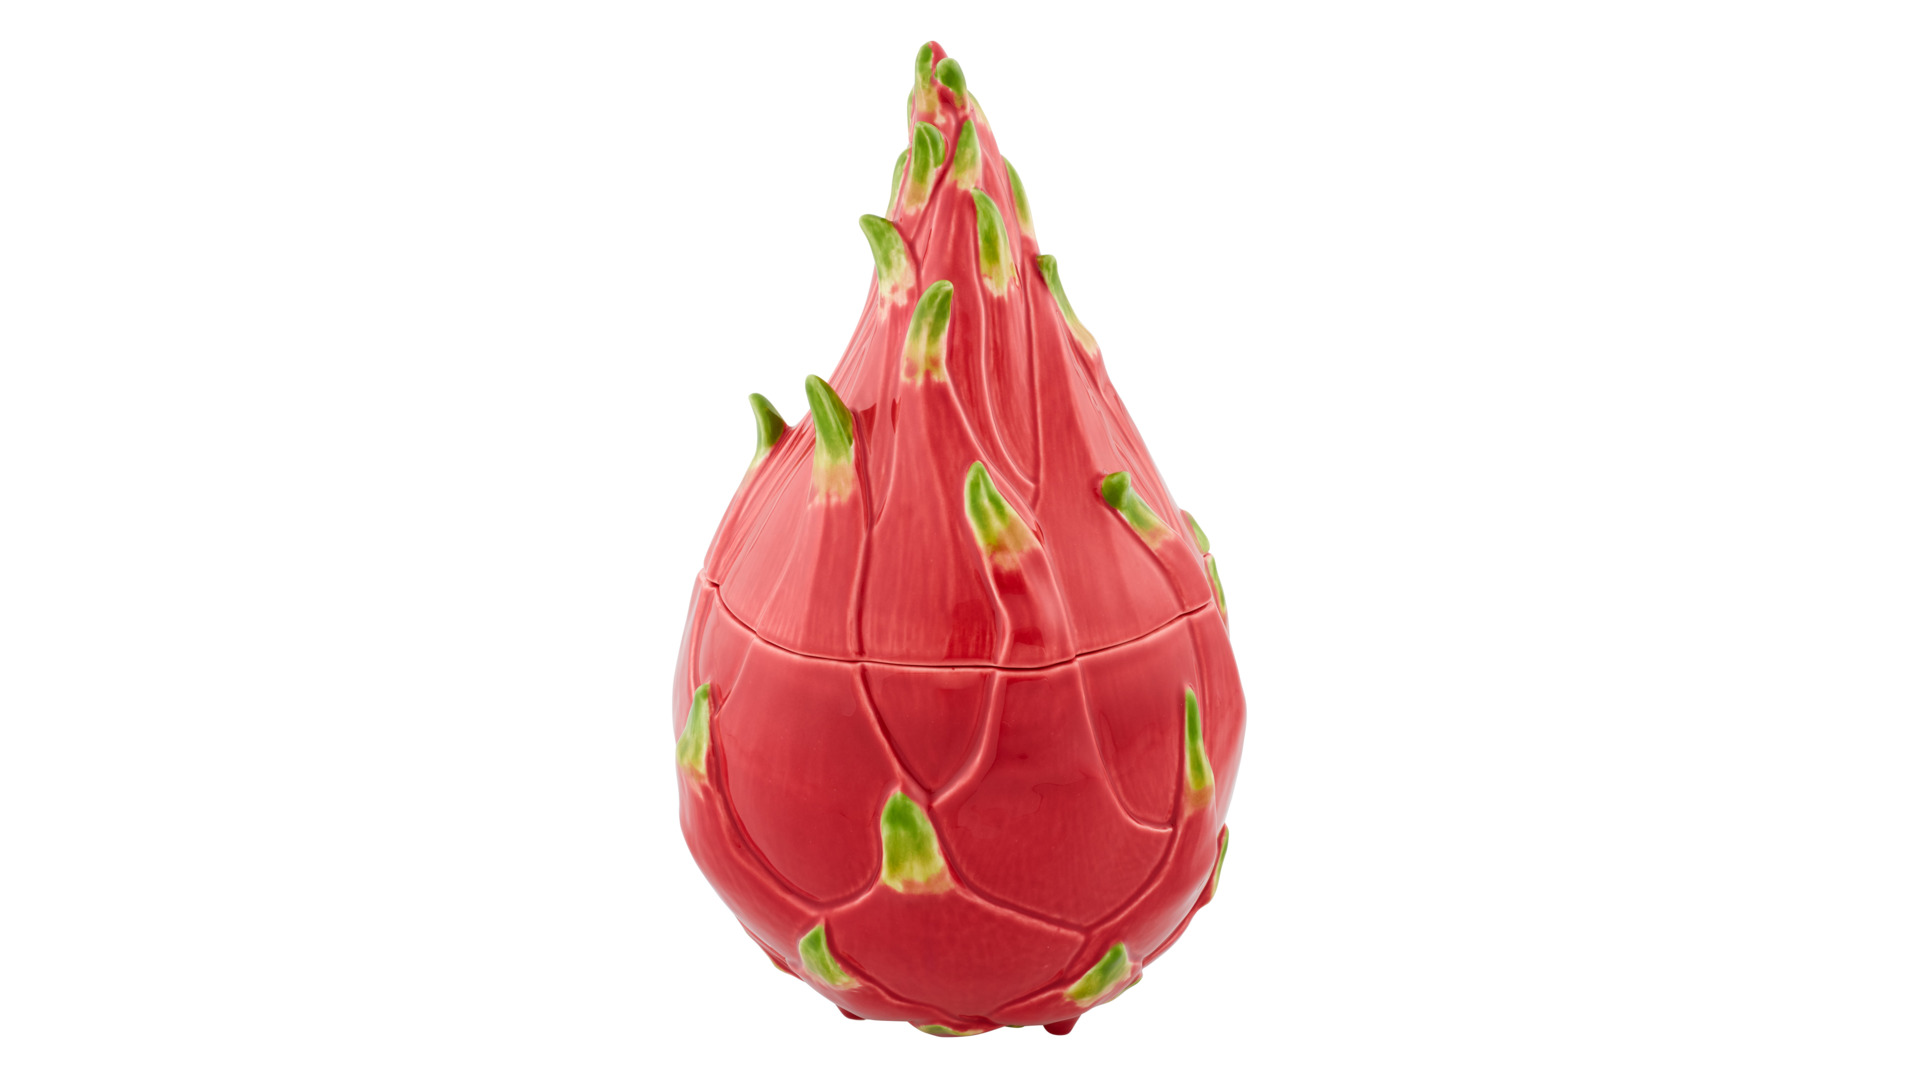 Емкость с крышкой Bordallo Pinheiro Тропические фрукты Питайя 20х21 см, керамика